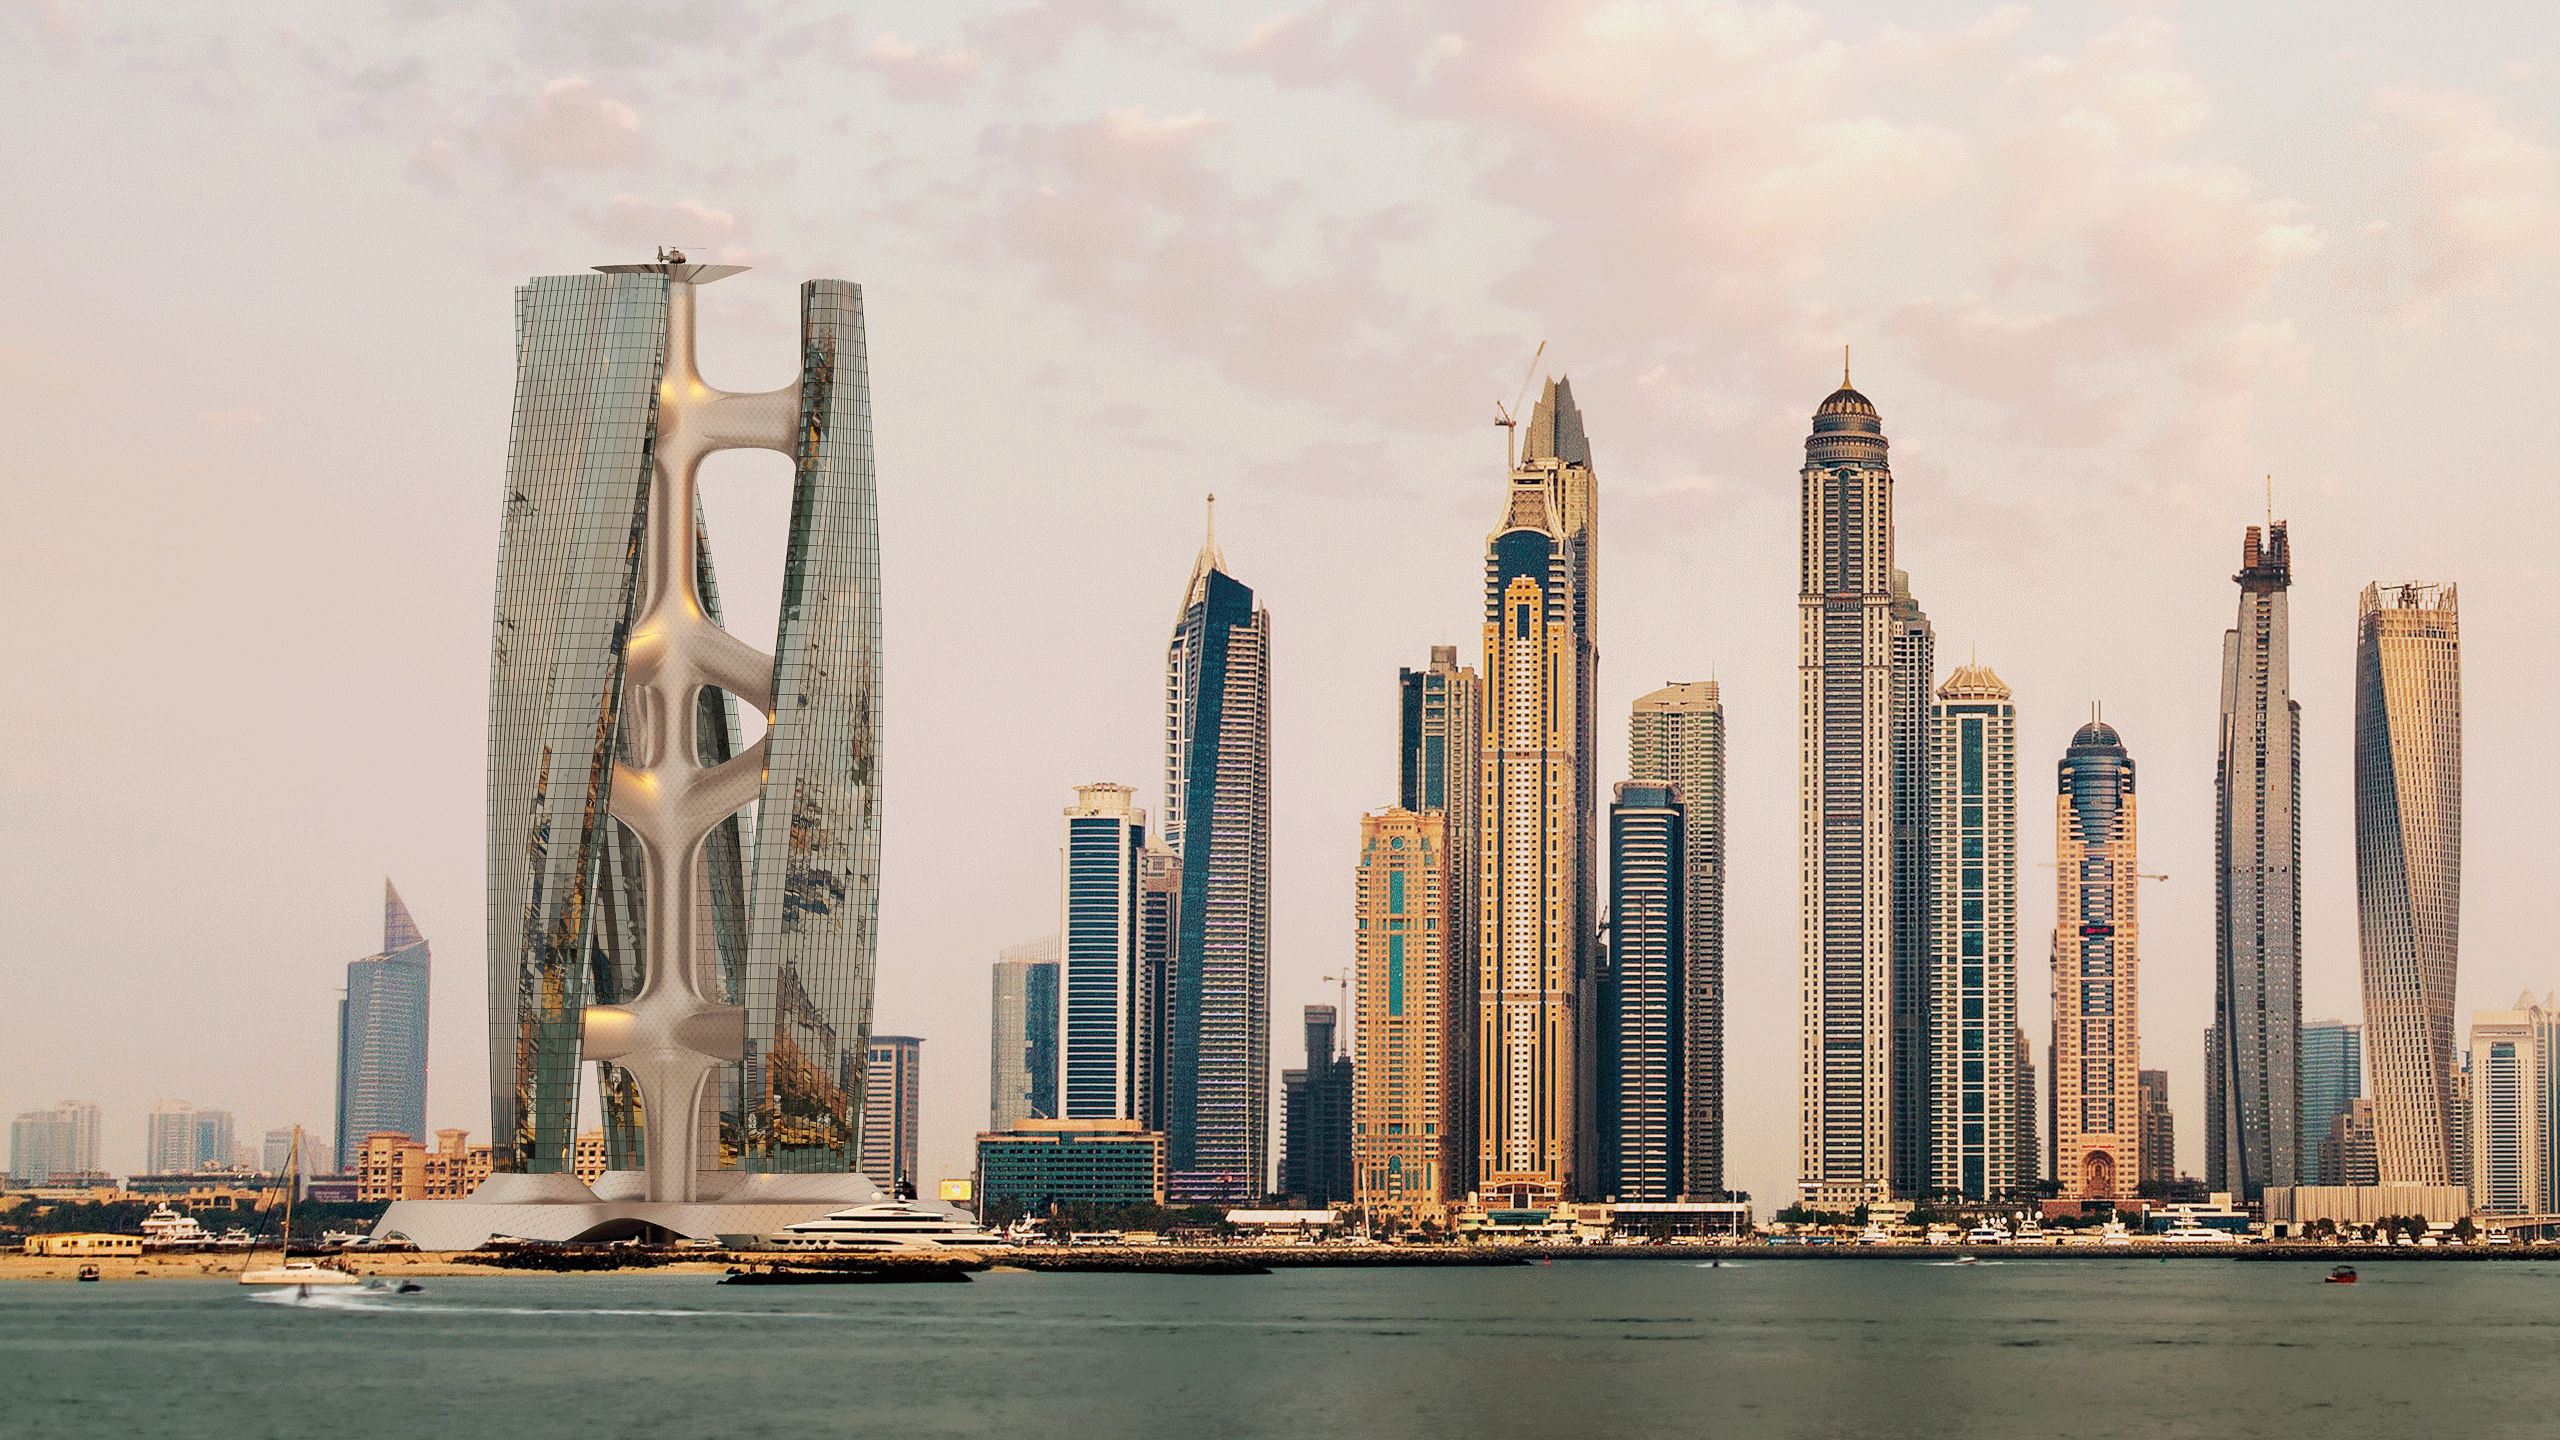 Squall Tower Skyscraper by Hayri Atak Architectural Design Studio